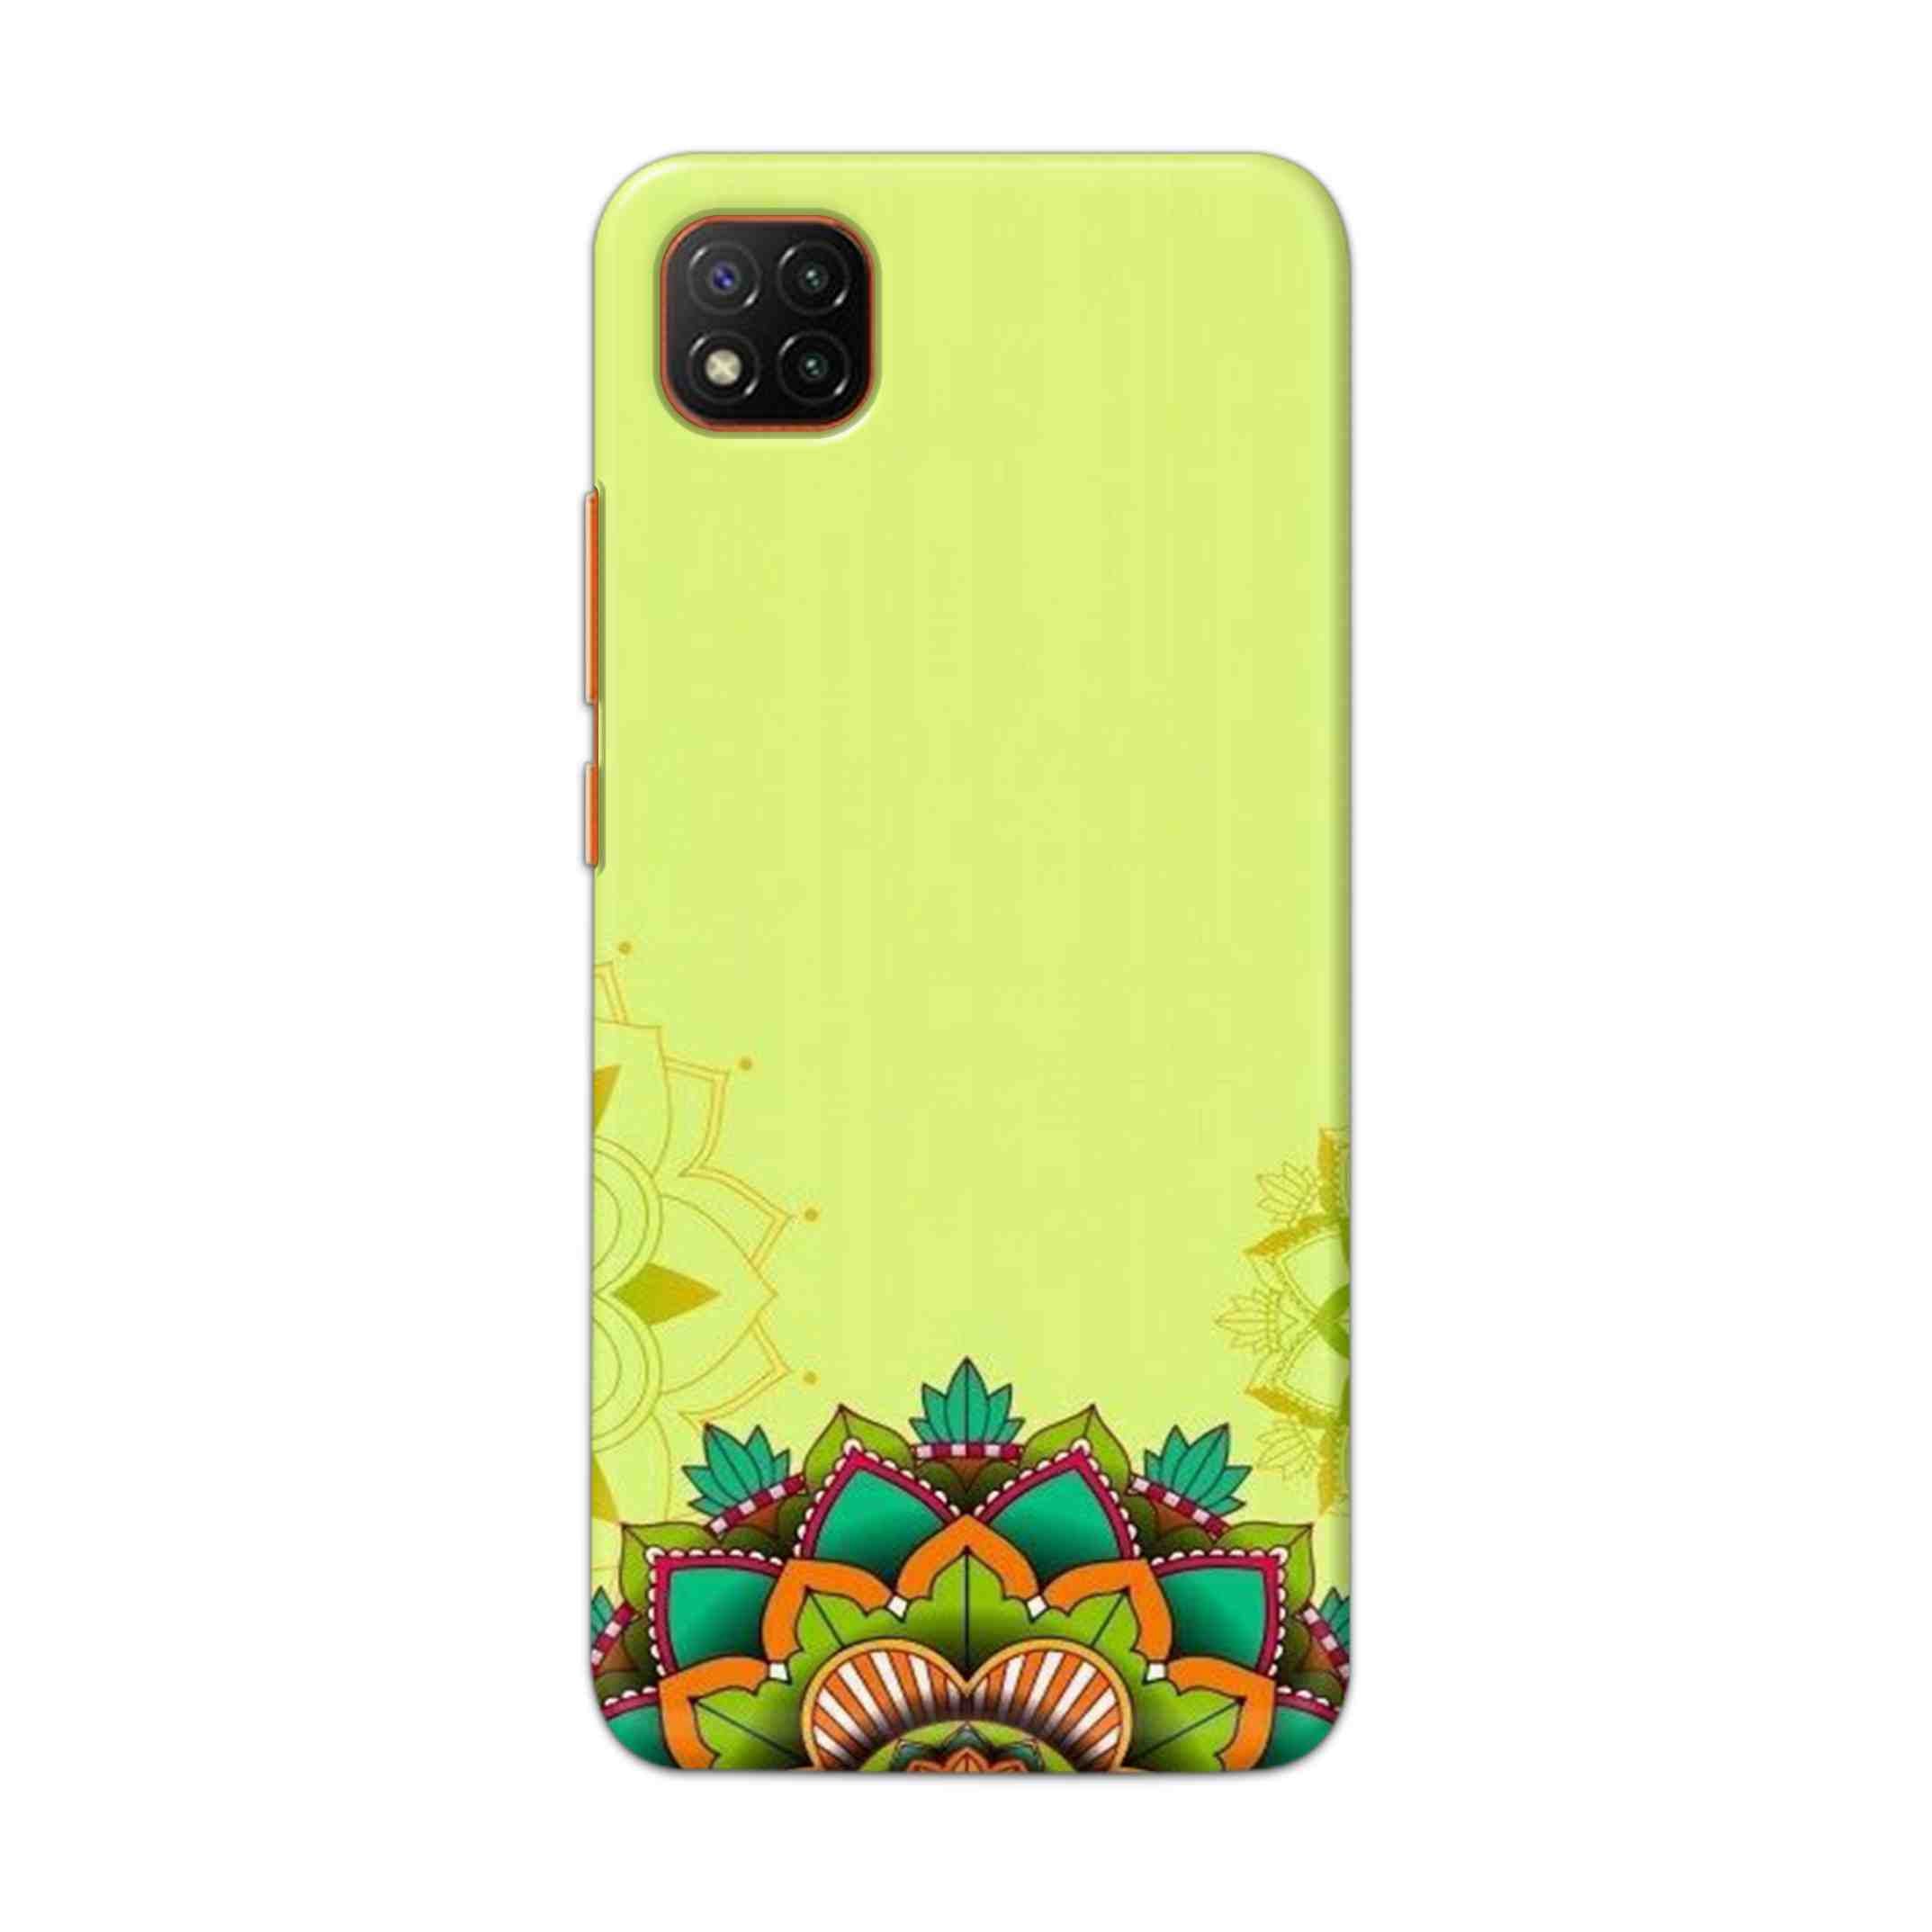 Buy Flower Mandala Hard Back Mobile Phone Case Cover For Mi 9C Online